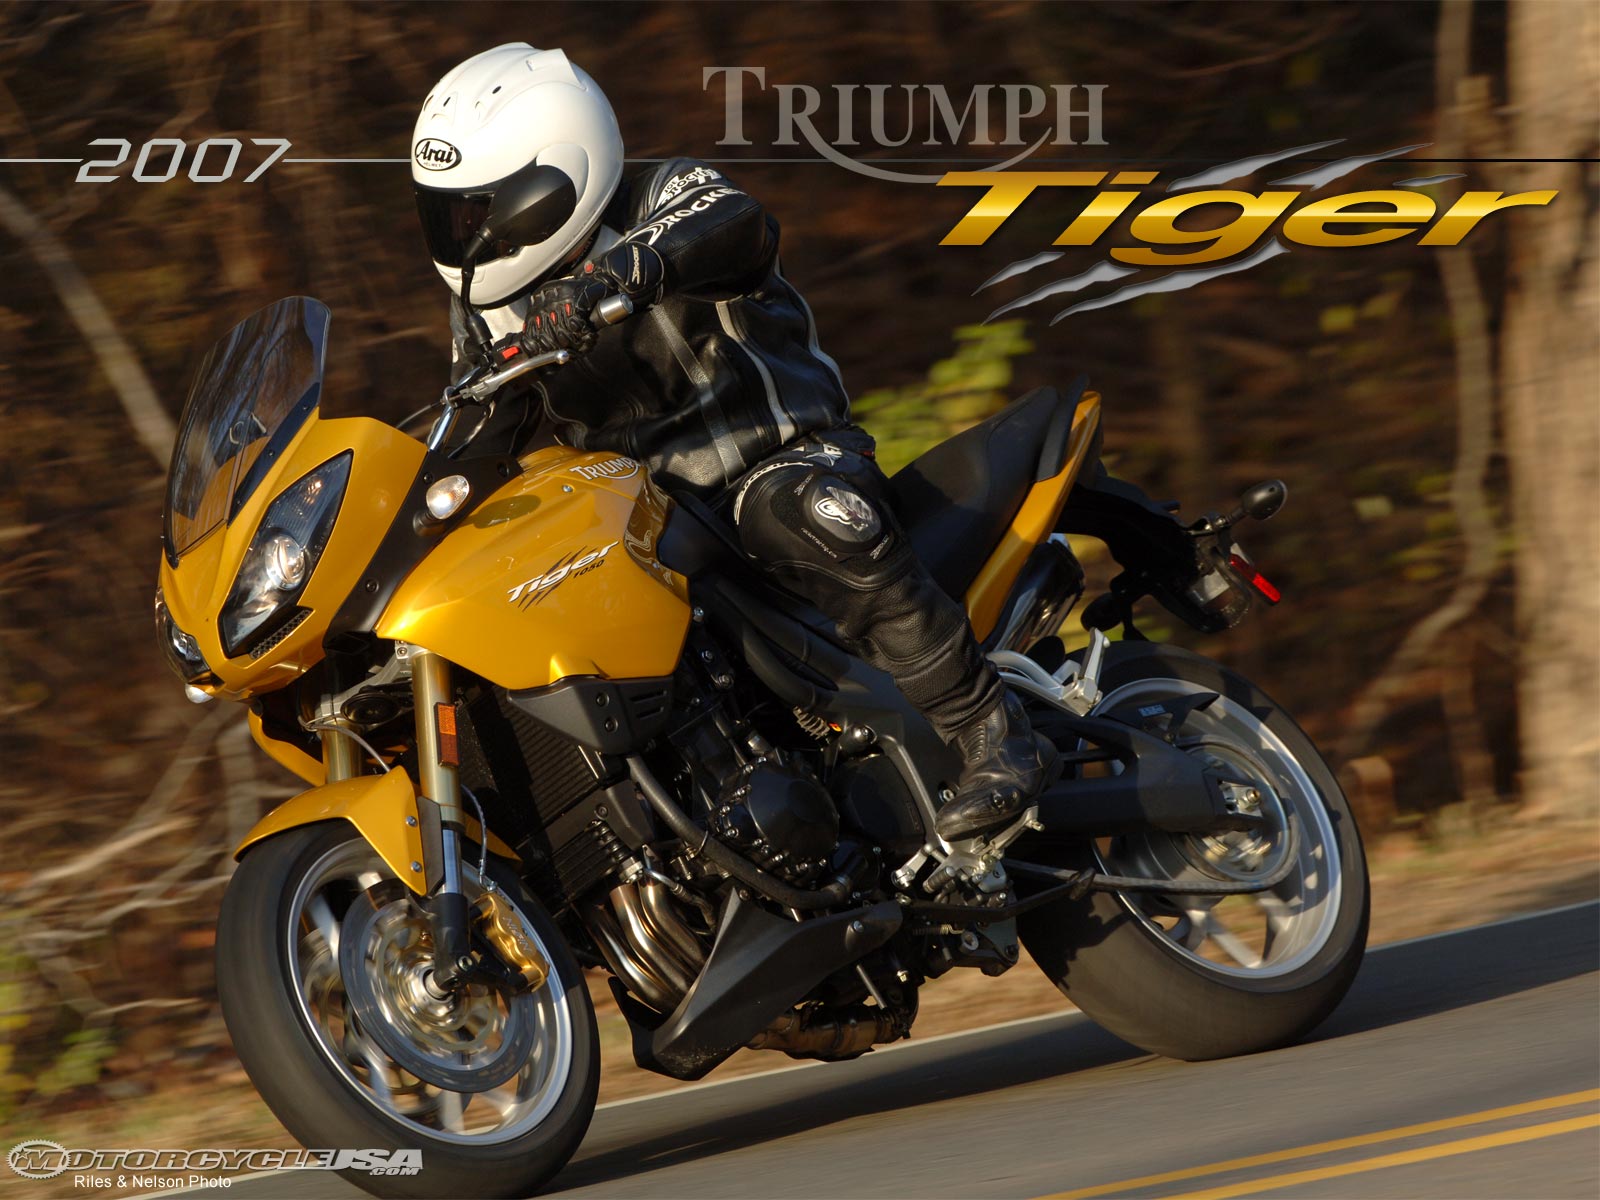 2007款凯旋Tiger摩托车图片1